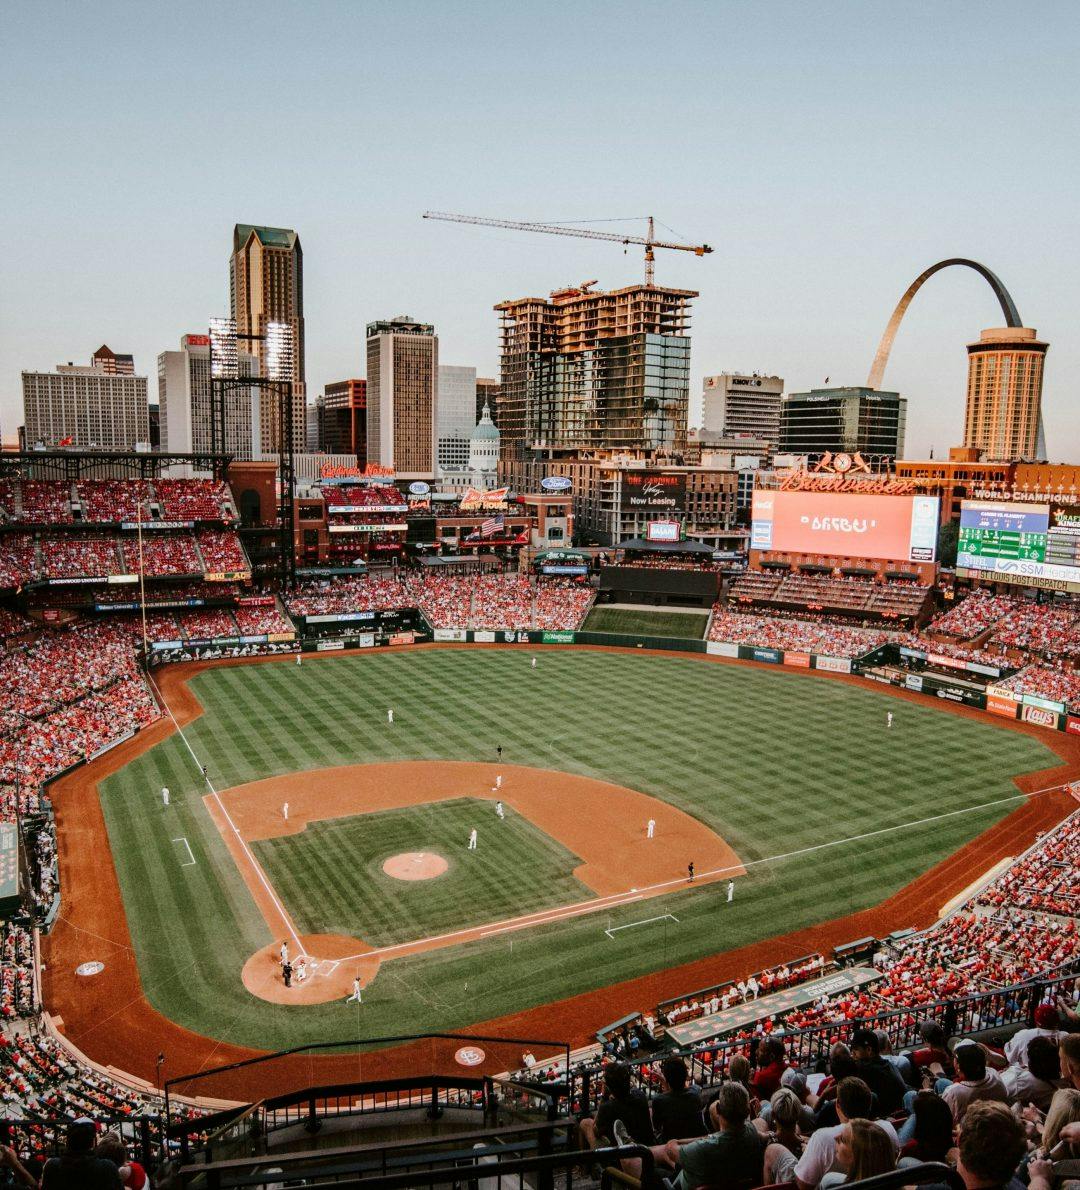 A baseball field in St Louis